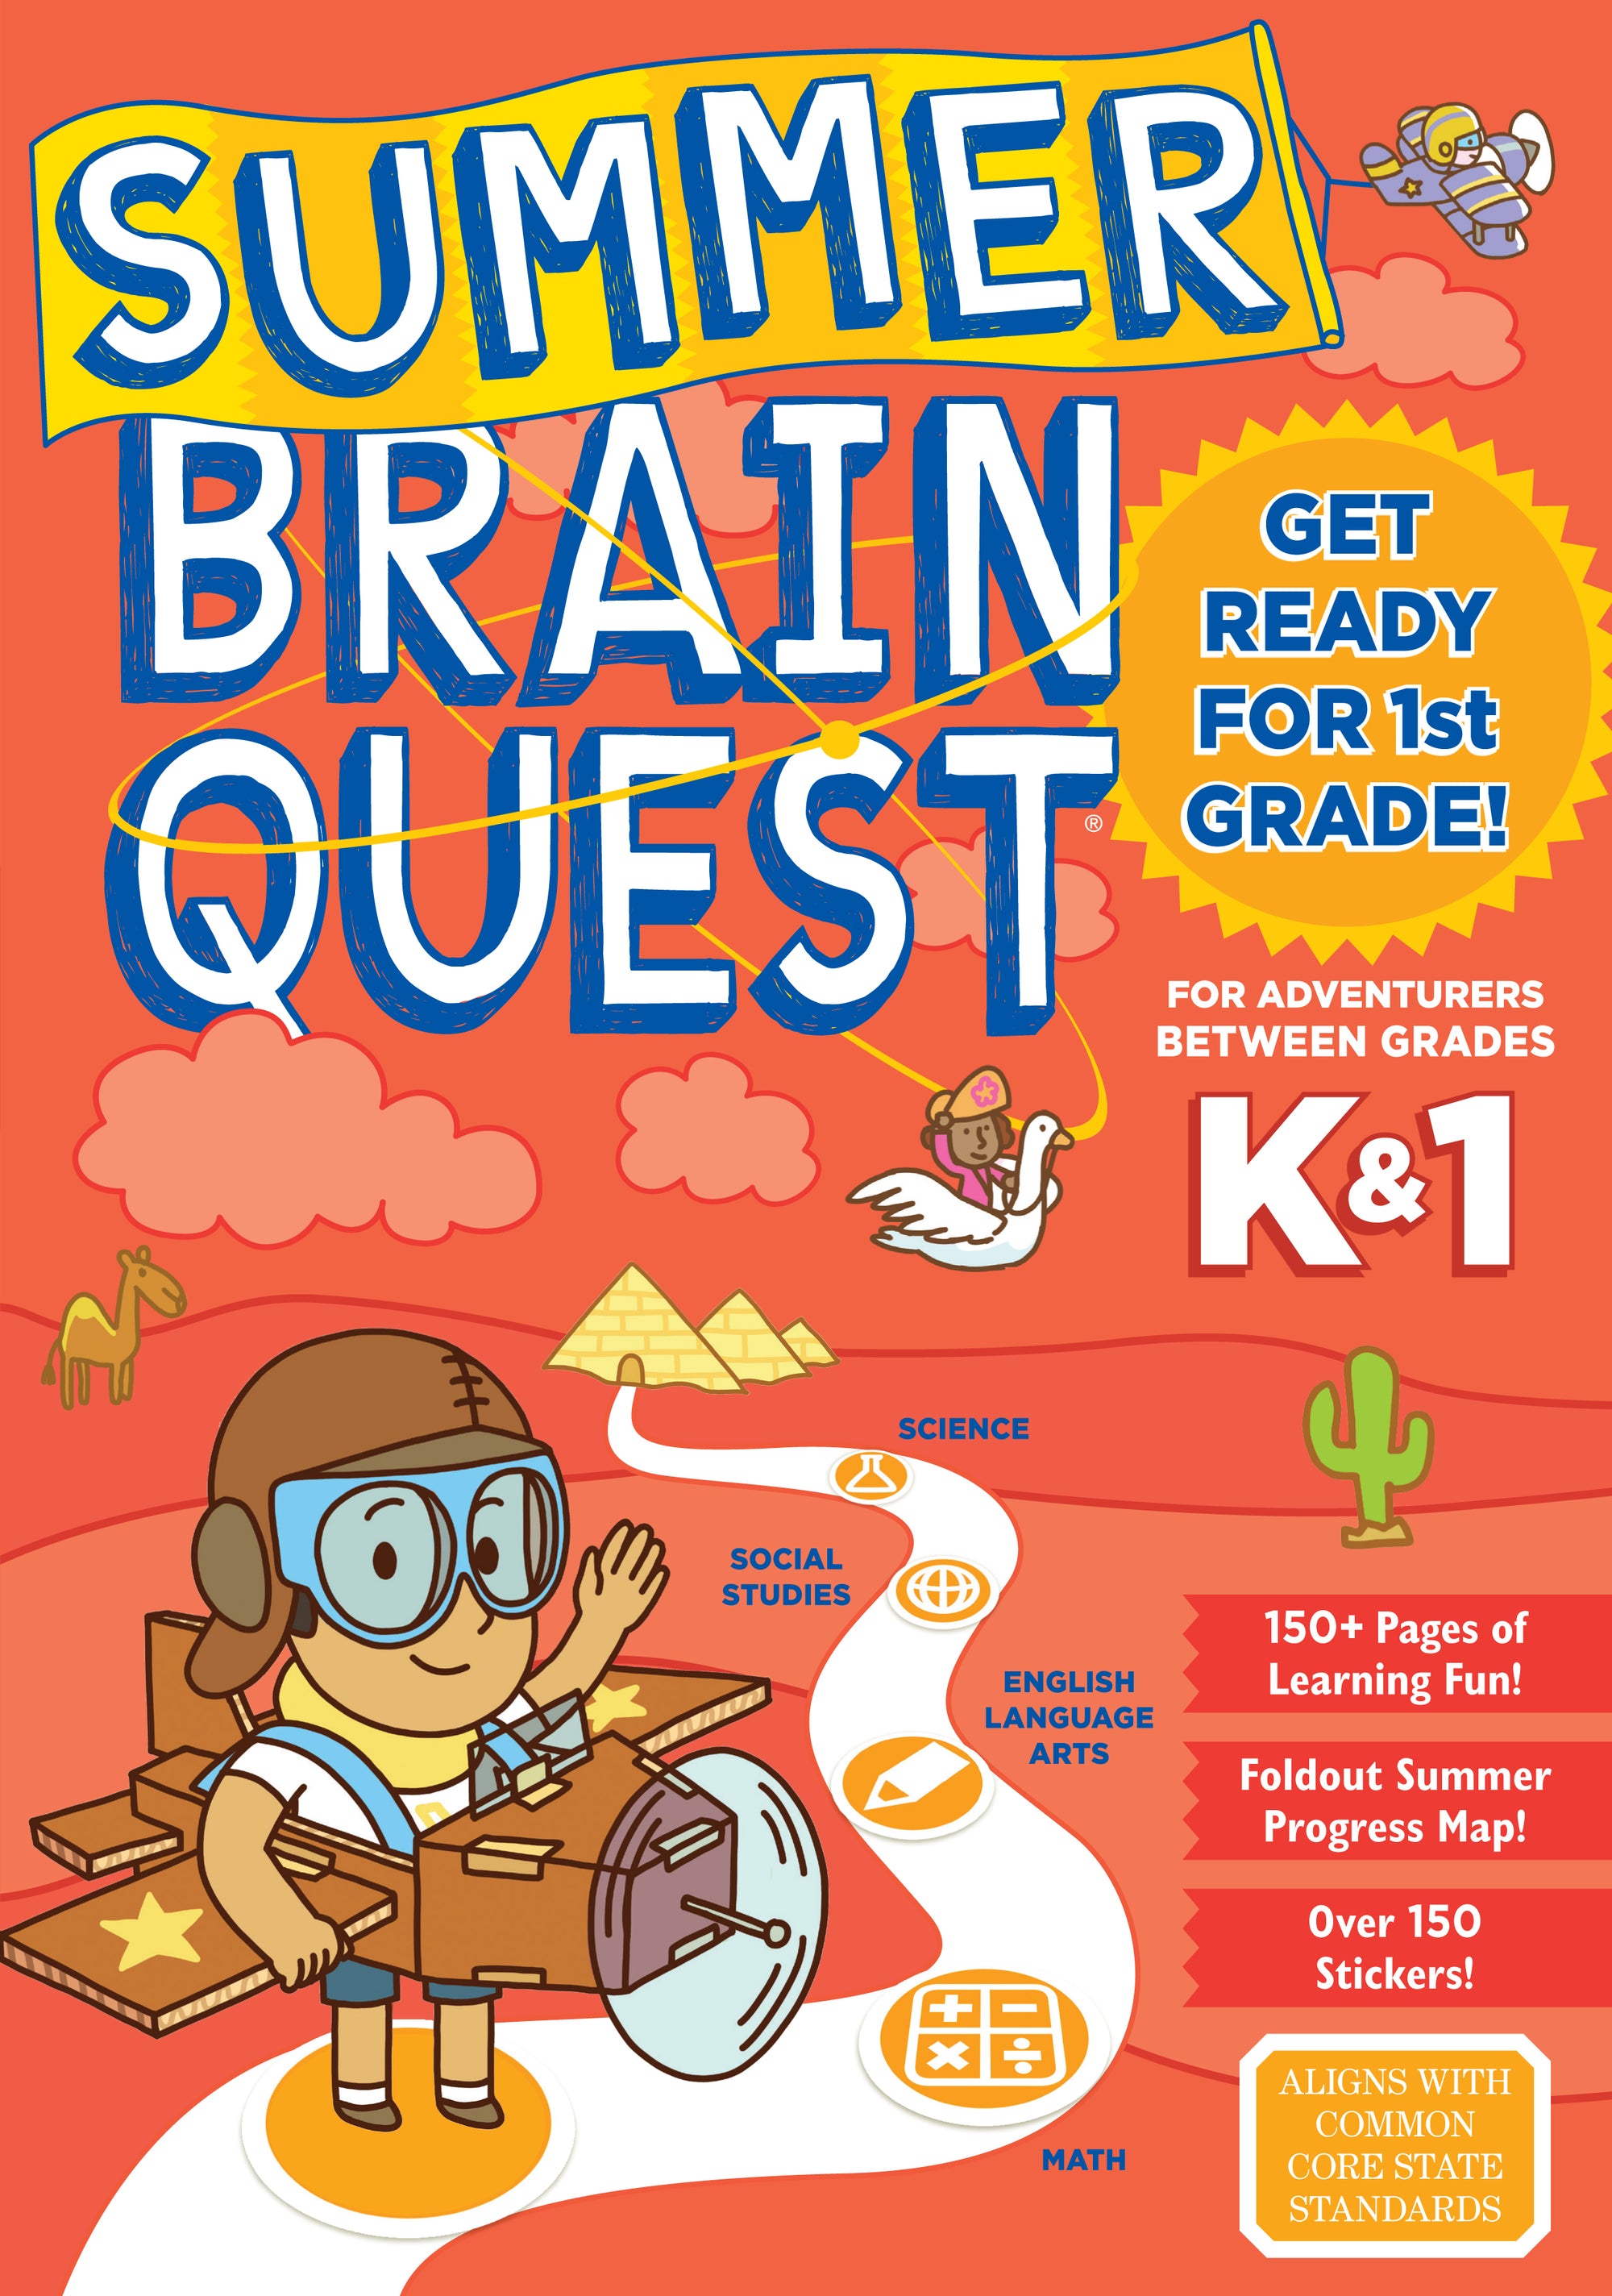 Brain Quest Summer Brain Quest: Between Grades K & 1